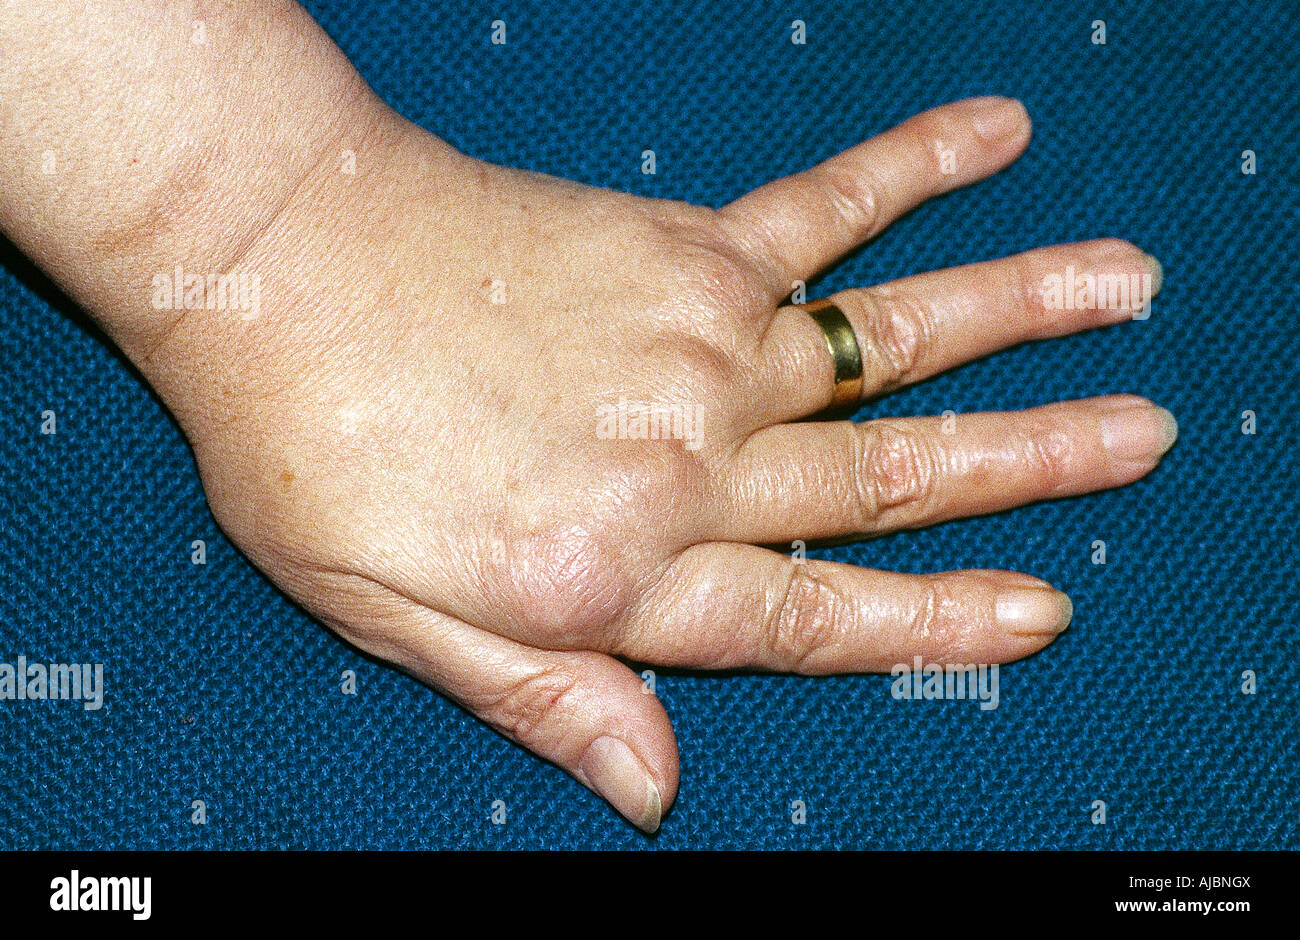 Grave artrite reumatoide che conduce alla deriva ulnare, prima di MCP di sostituzione di articolazione Foto Stock